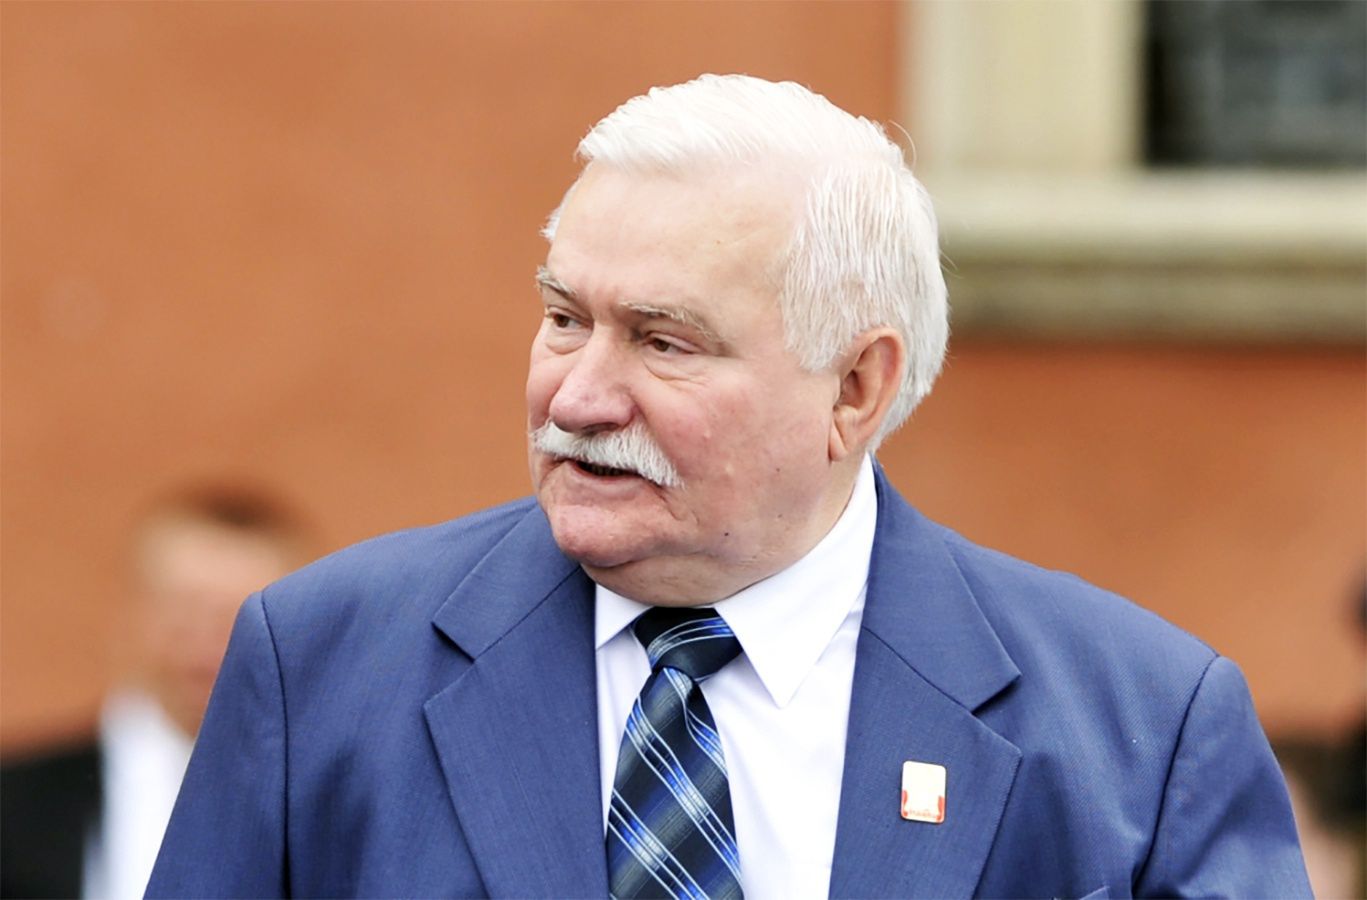 Dramat Lecha Wałęsy. Były prezydent jest bankrutem. "Rozdałem i stanąłem z pustą kieszenią"